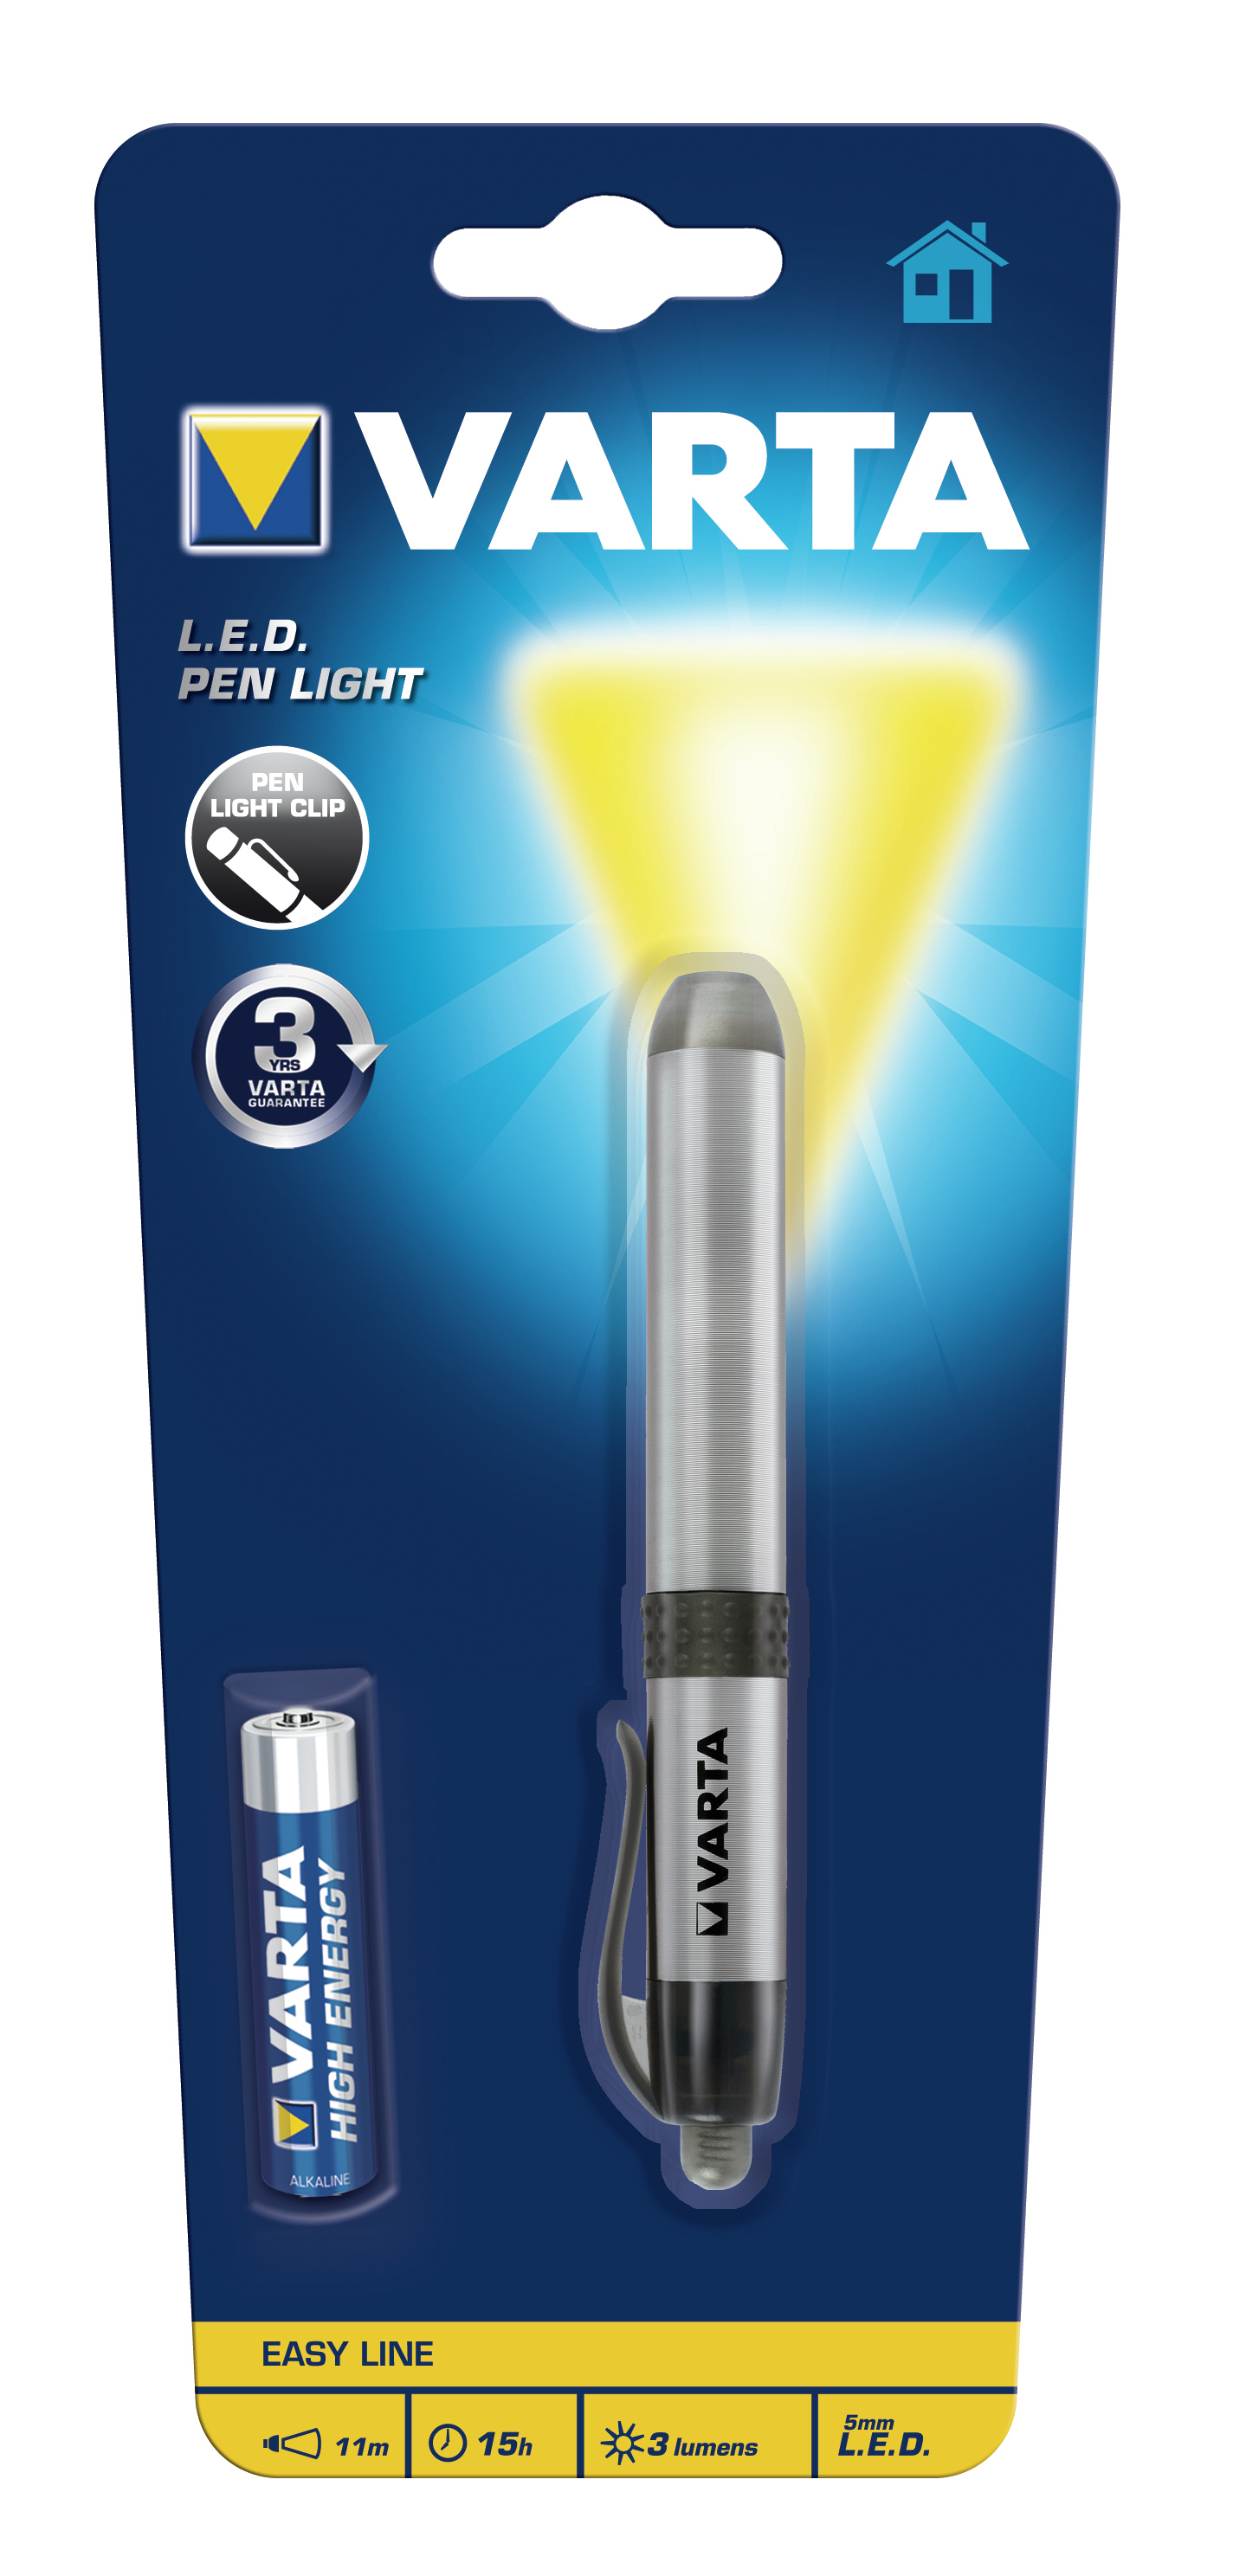 Varta -LEDPL - Stift-Blinklicht - Silber - Aluminium - LED - 1 Lampen - 3 lm